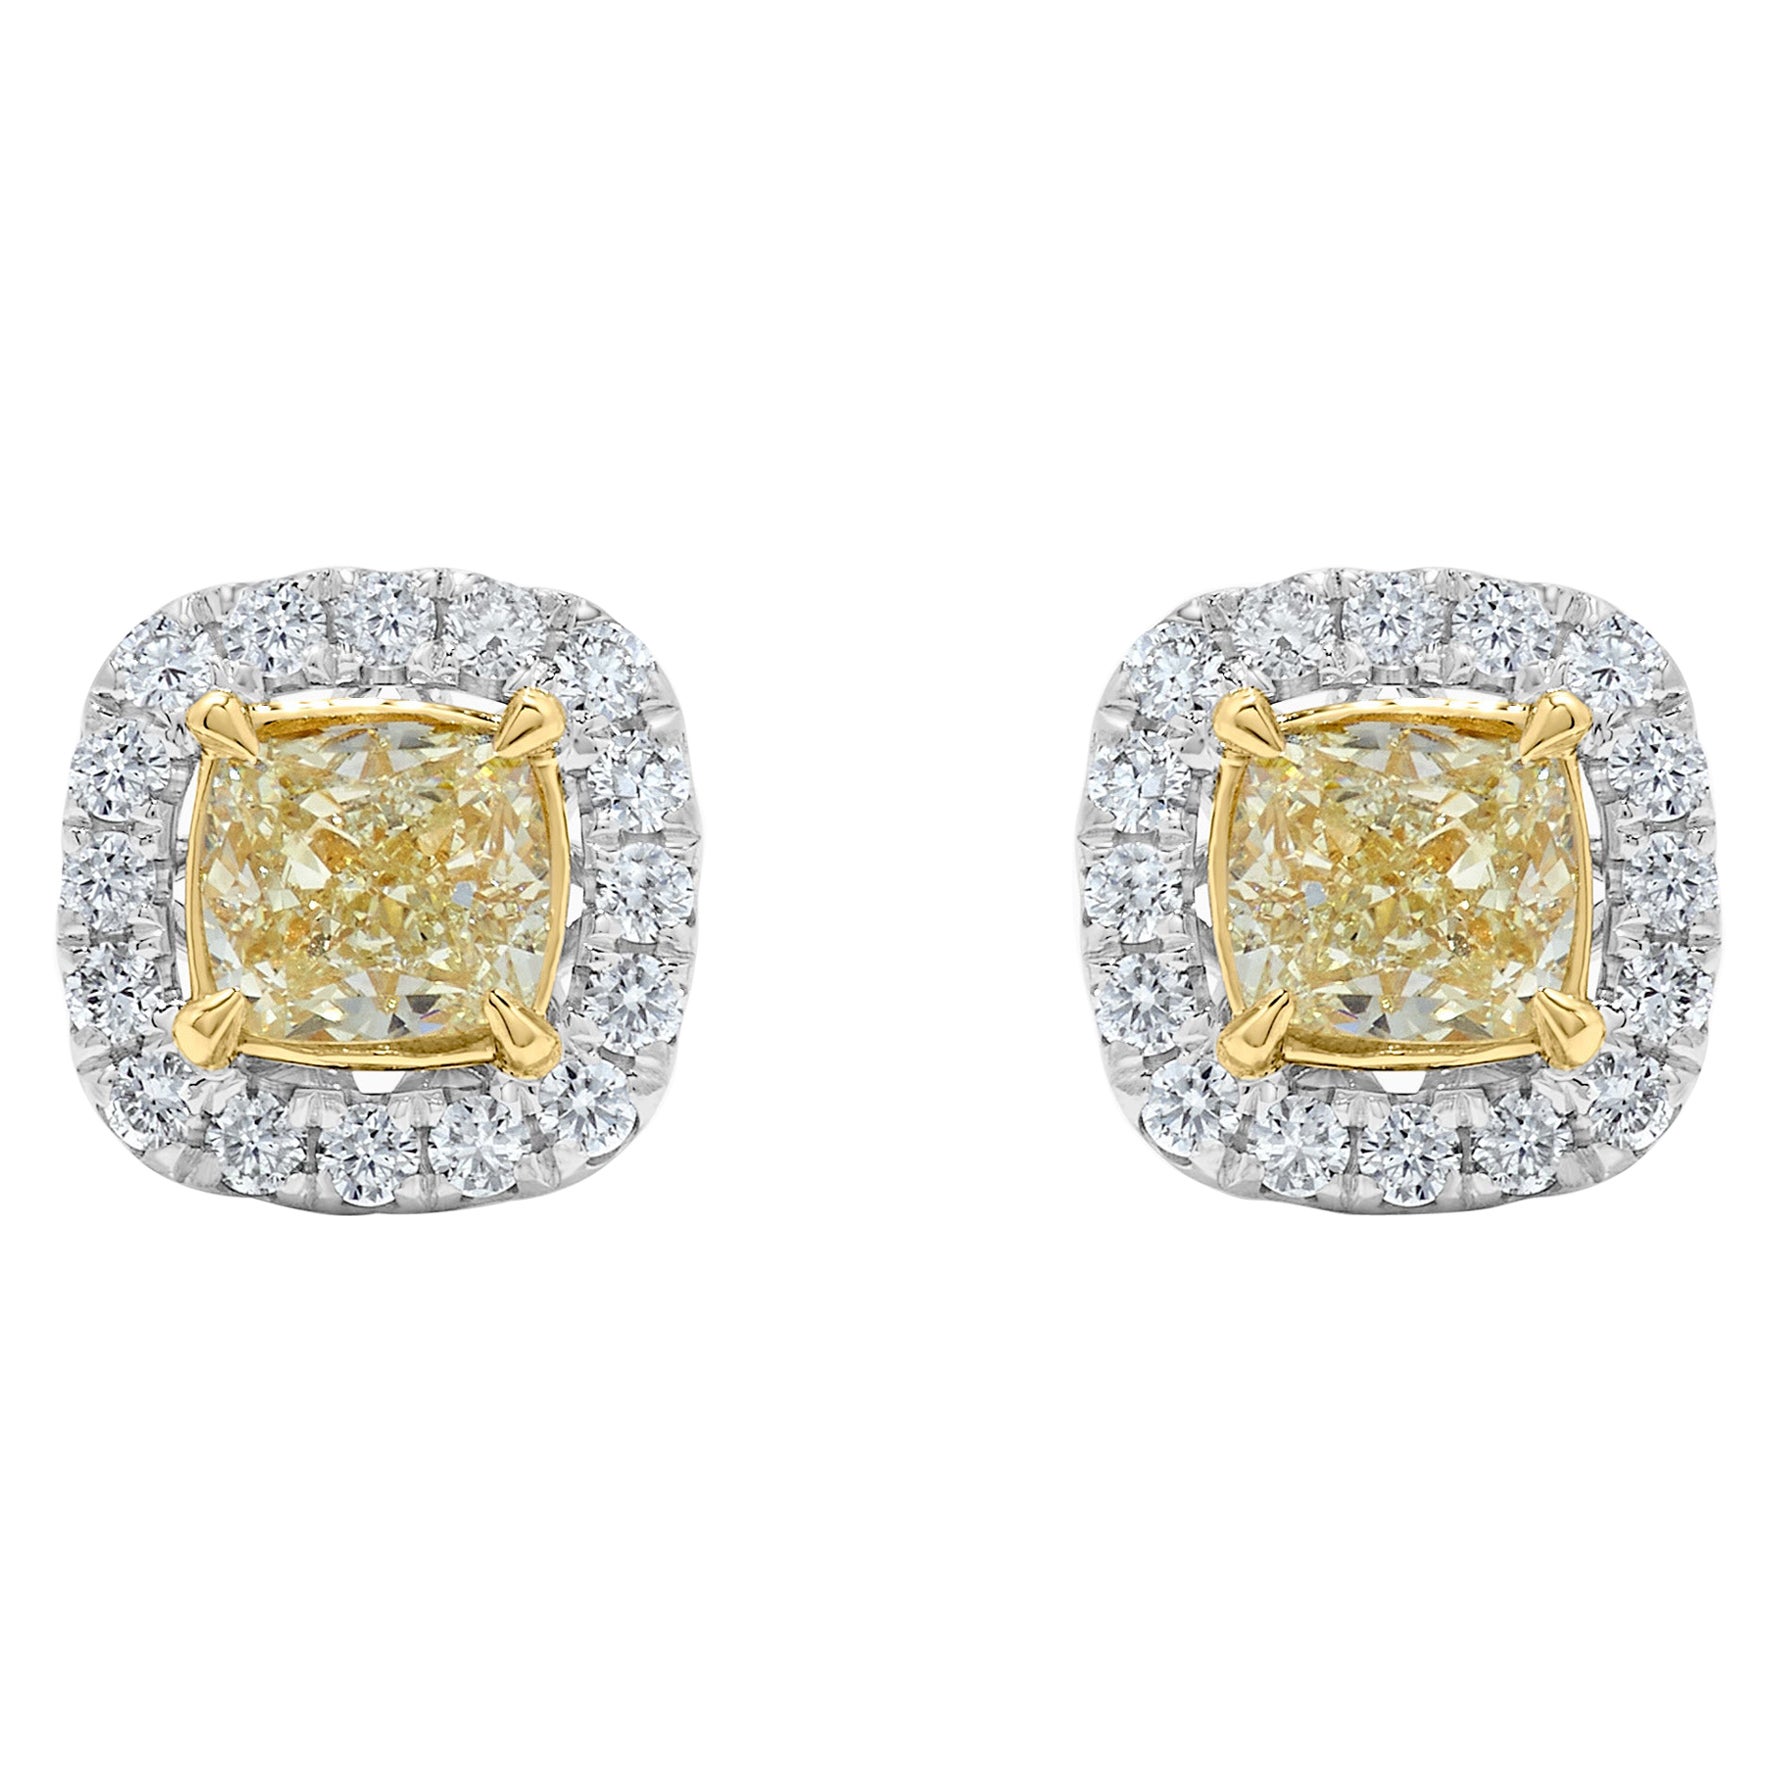 Boucles d'oreilles en or avec diamant coussin de 1,84 carat TW de couleur naturelle jaune